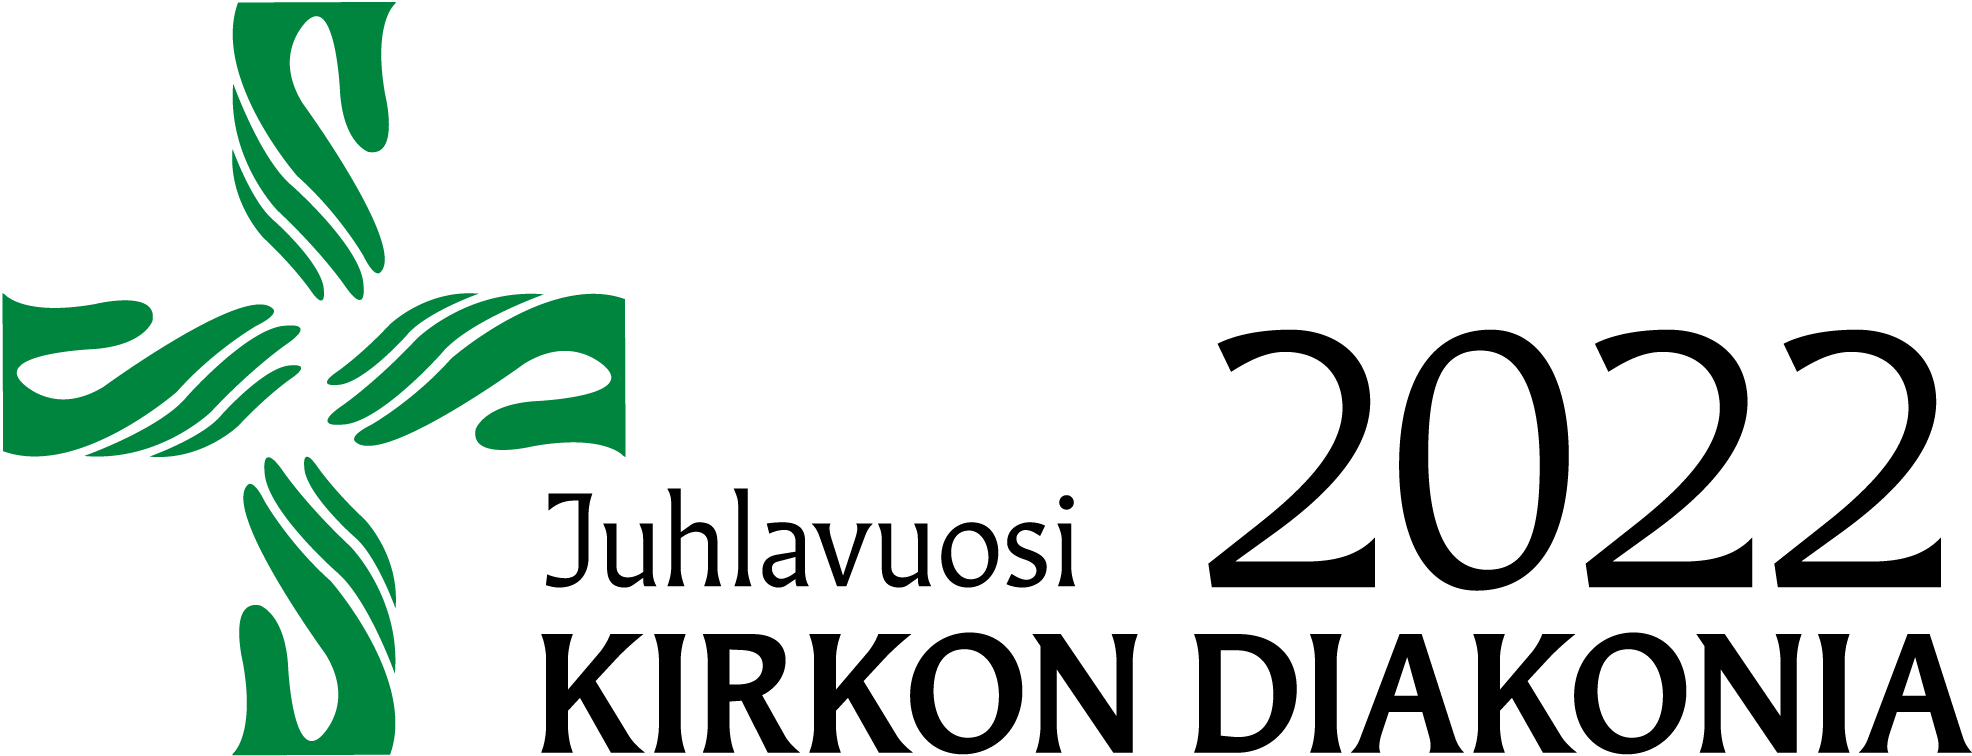 Diakonian juhlavuoden logossa on neljä vihreää tyyliteltyä kämmentä ristin muodossa.